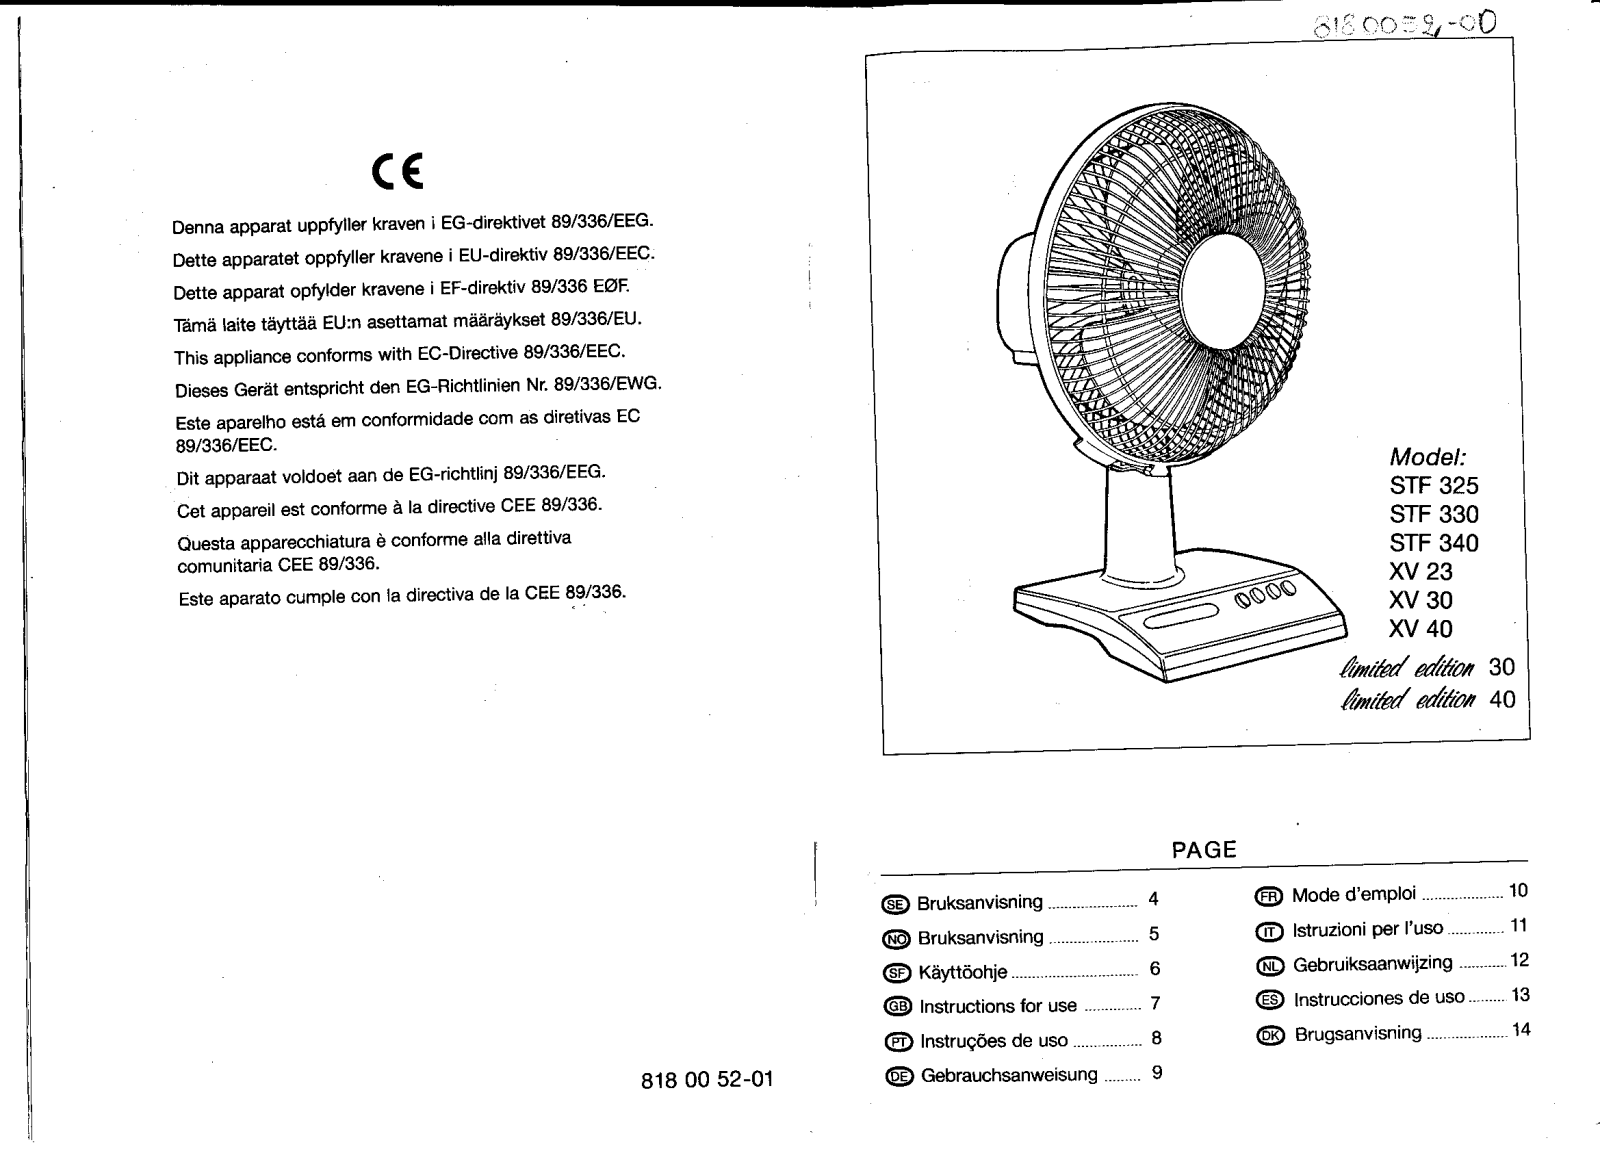 AEG-Electrolux STF340, STF330, STF325 User Manual